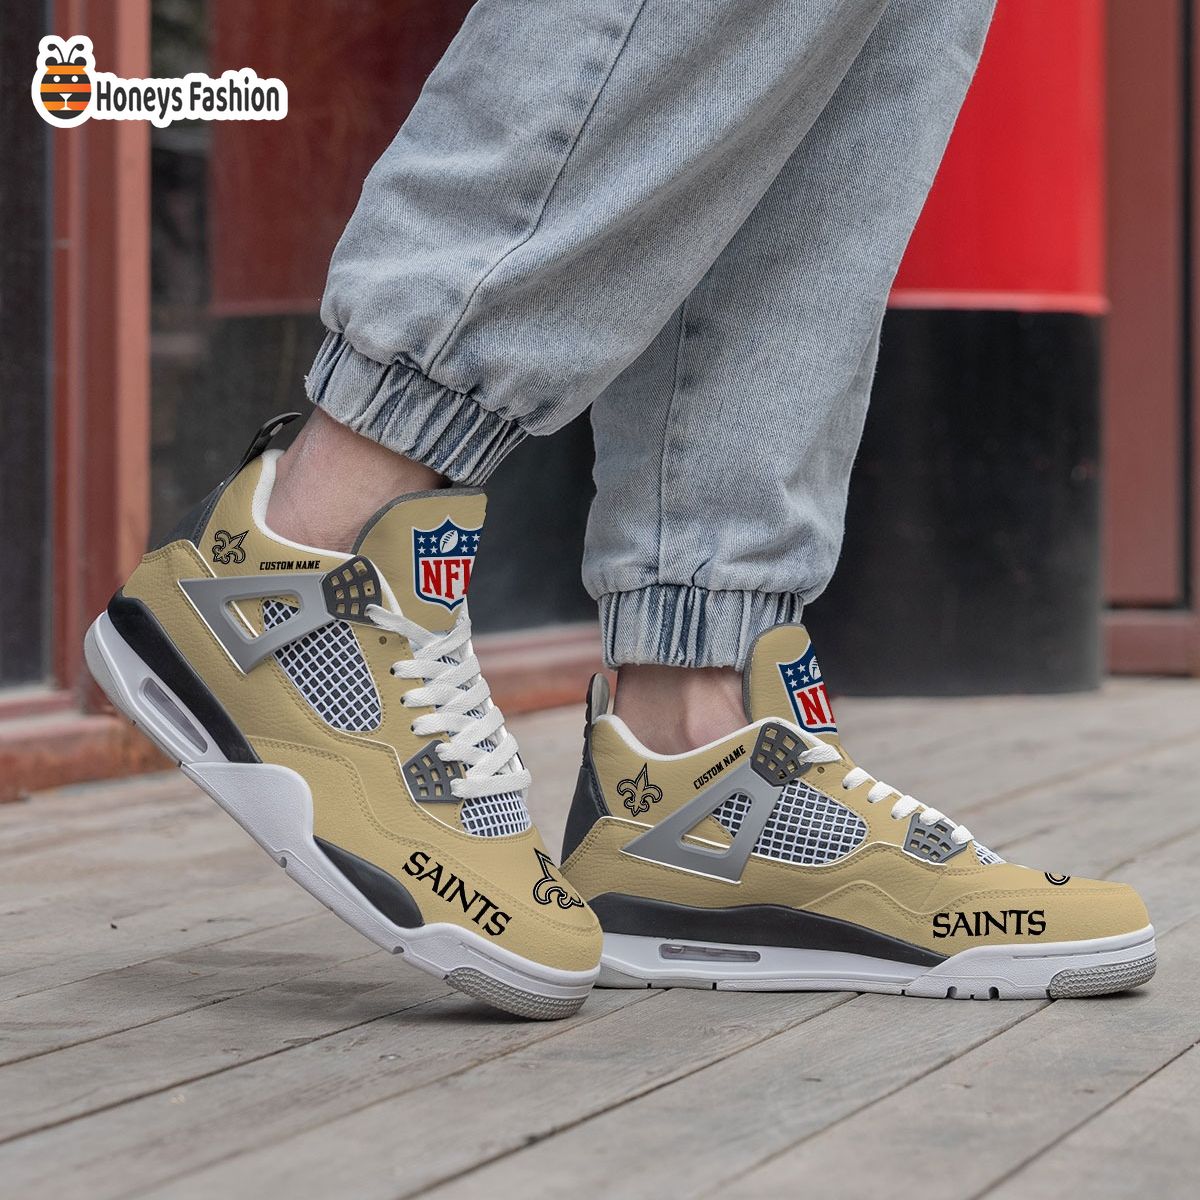 New Orleans Saints NFL Air Jordan 4 Shoes